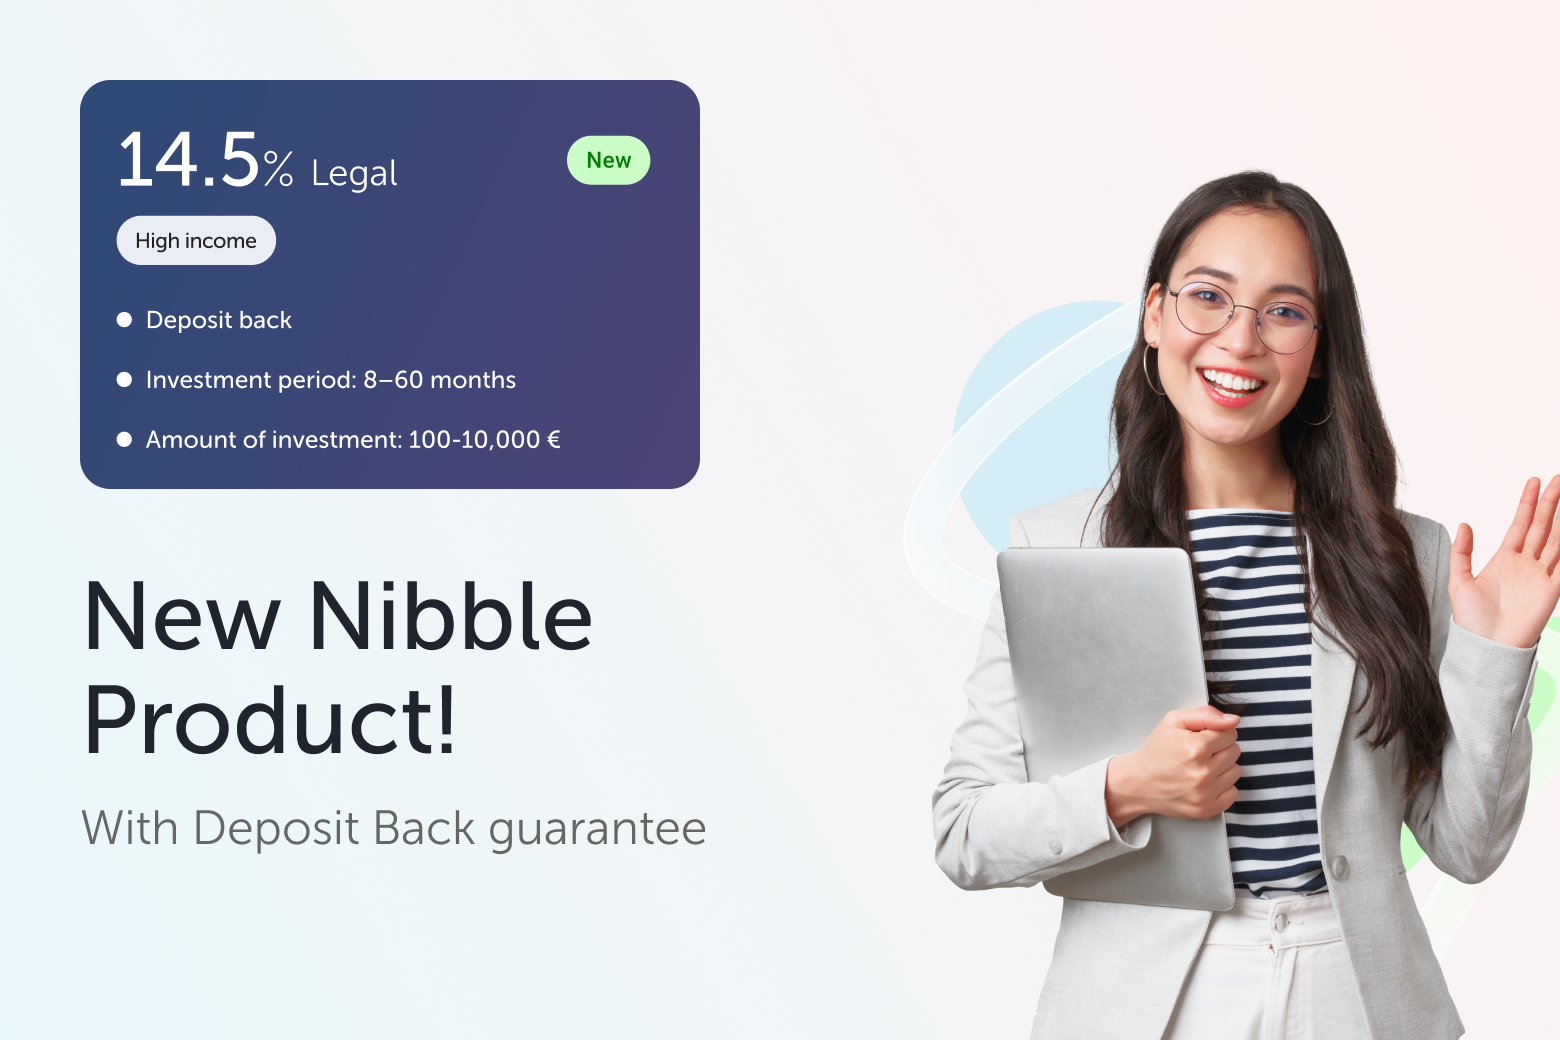 Nibble presenta una nueva estrategia de inversión - Legal